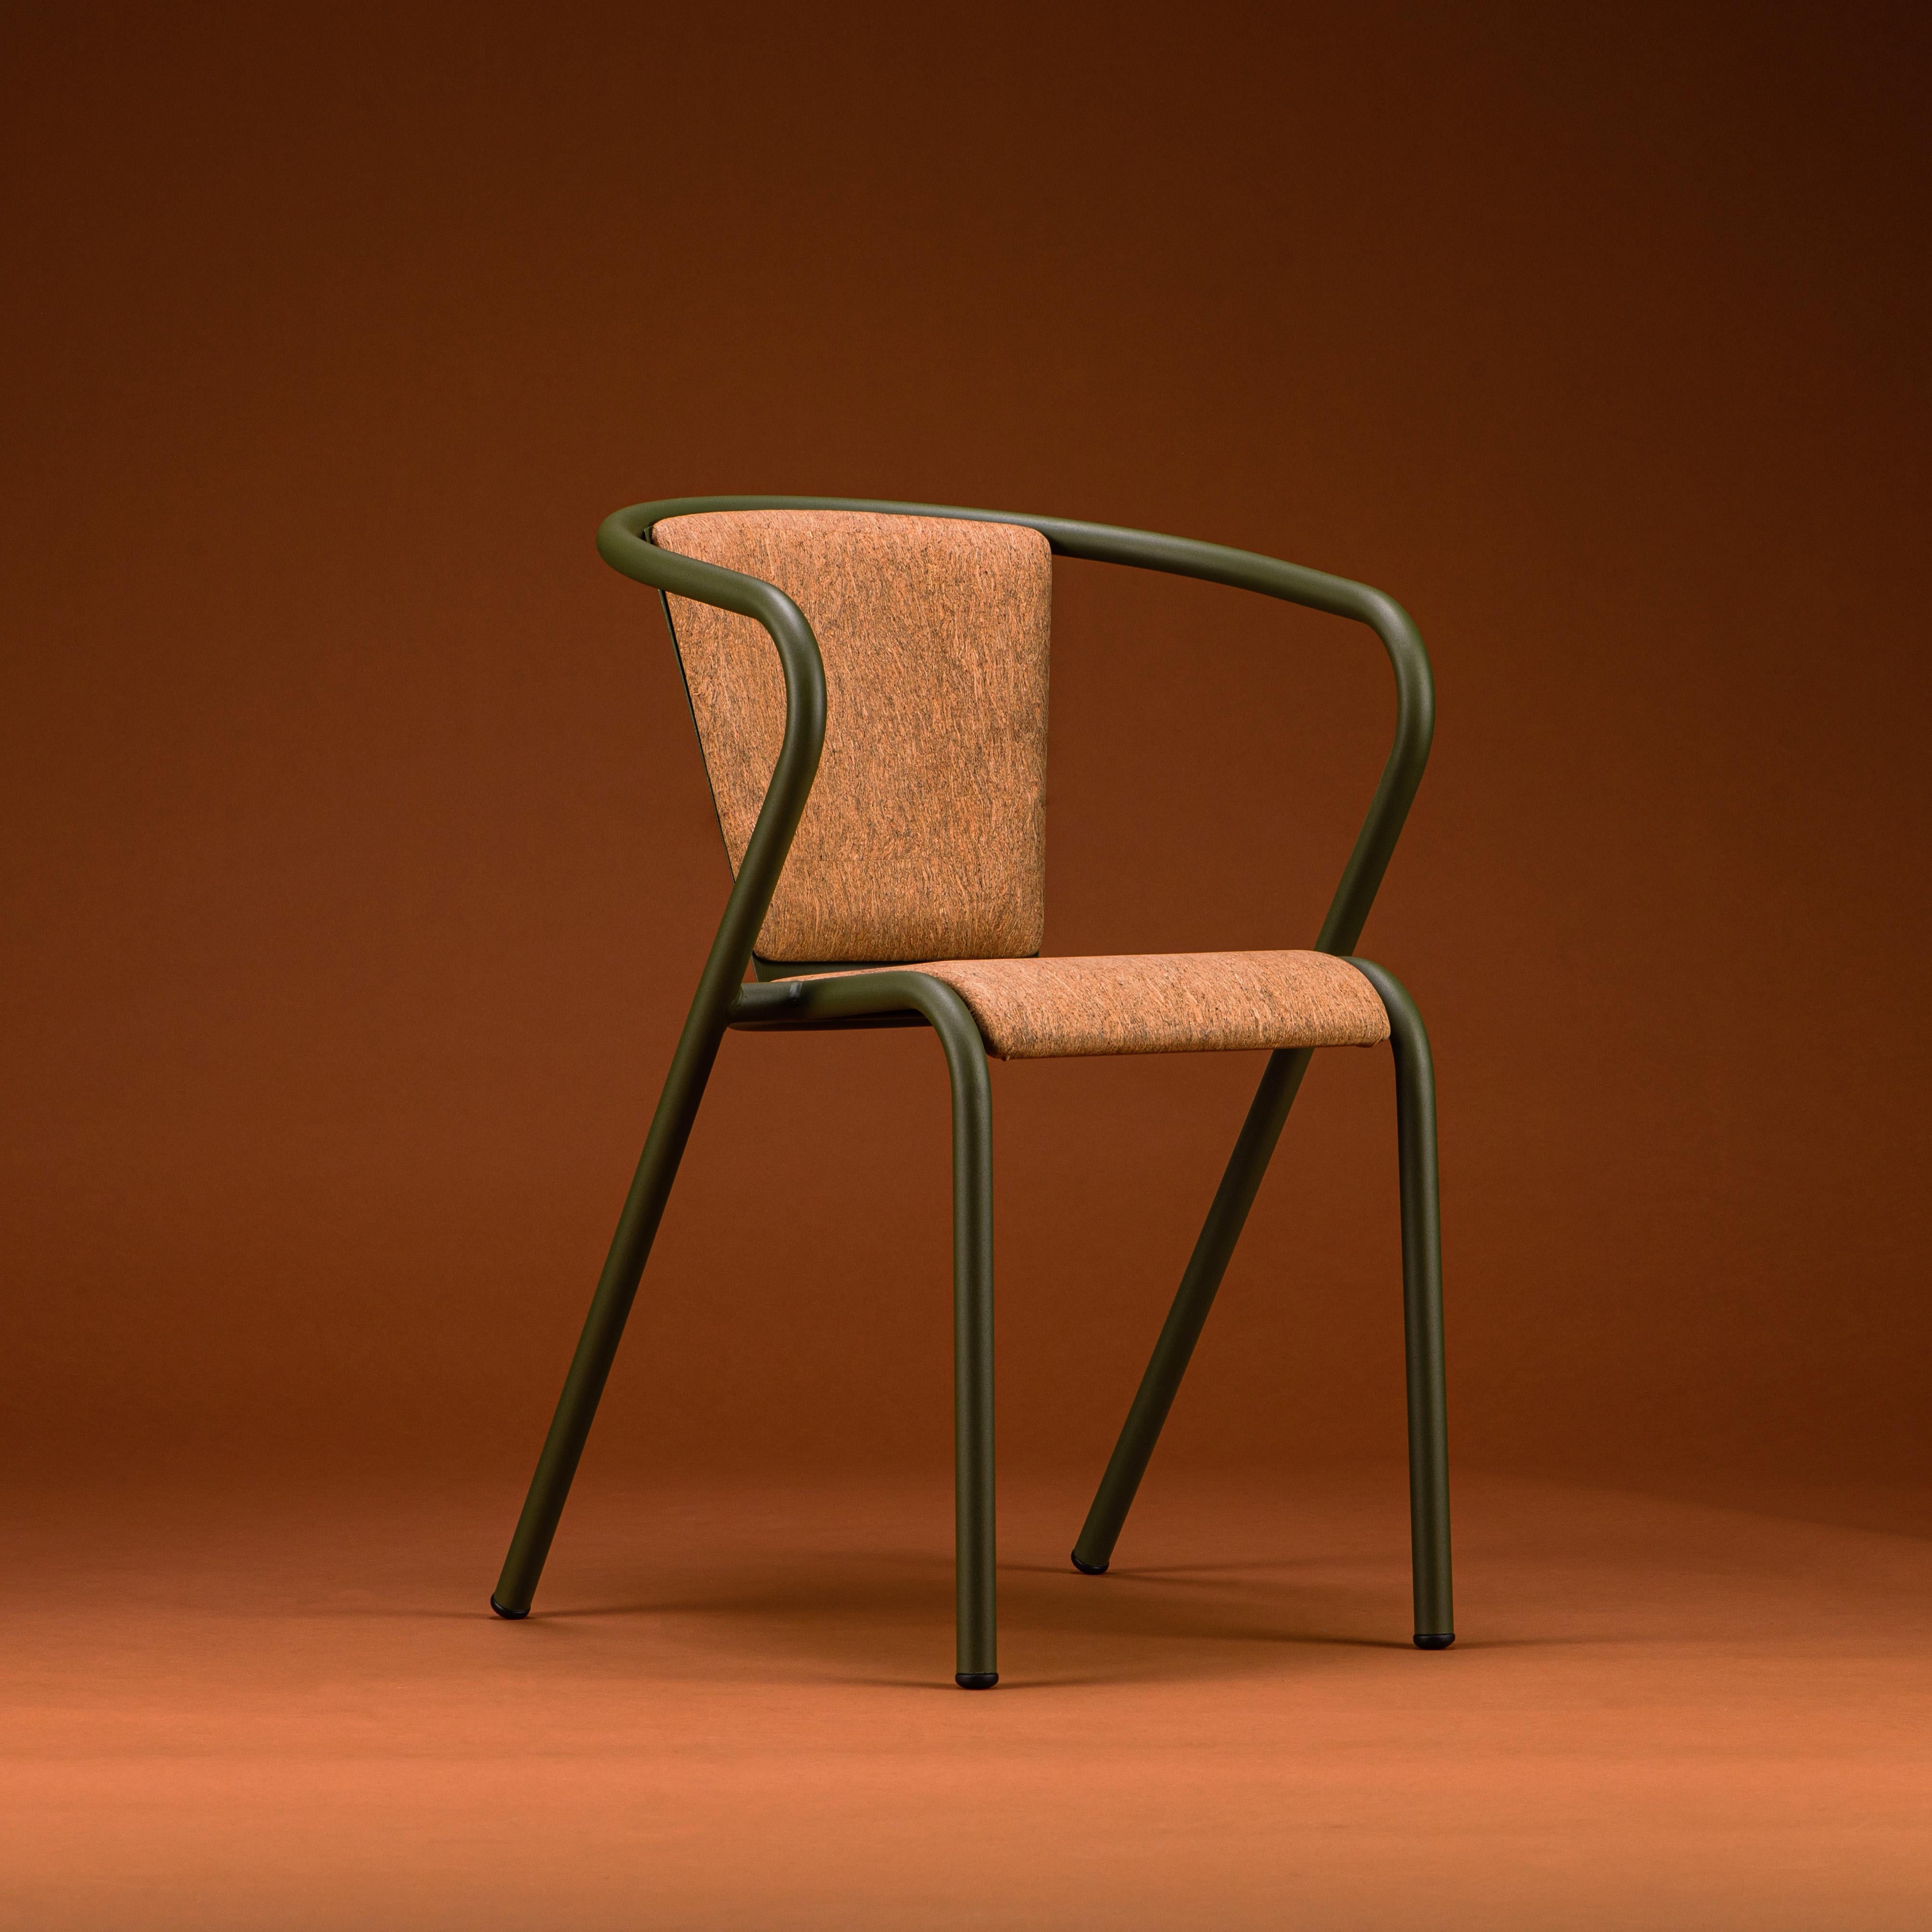 BICAchair est un fauteuil de salle à manger empilable en acier recyclé et recyclable, fini avec notre sélection premium de couleurs de revêtement en poudre, dans ce cas dans une couleur Olive texturée, qui transforme un classique en quelque chose de